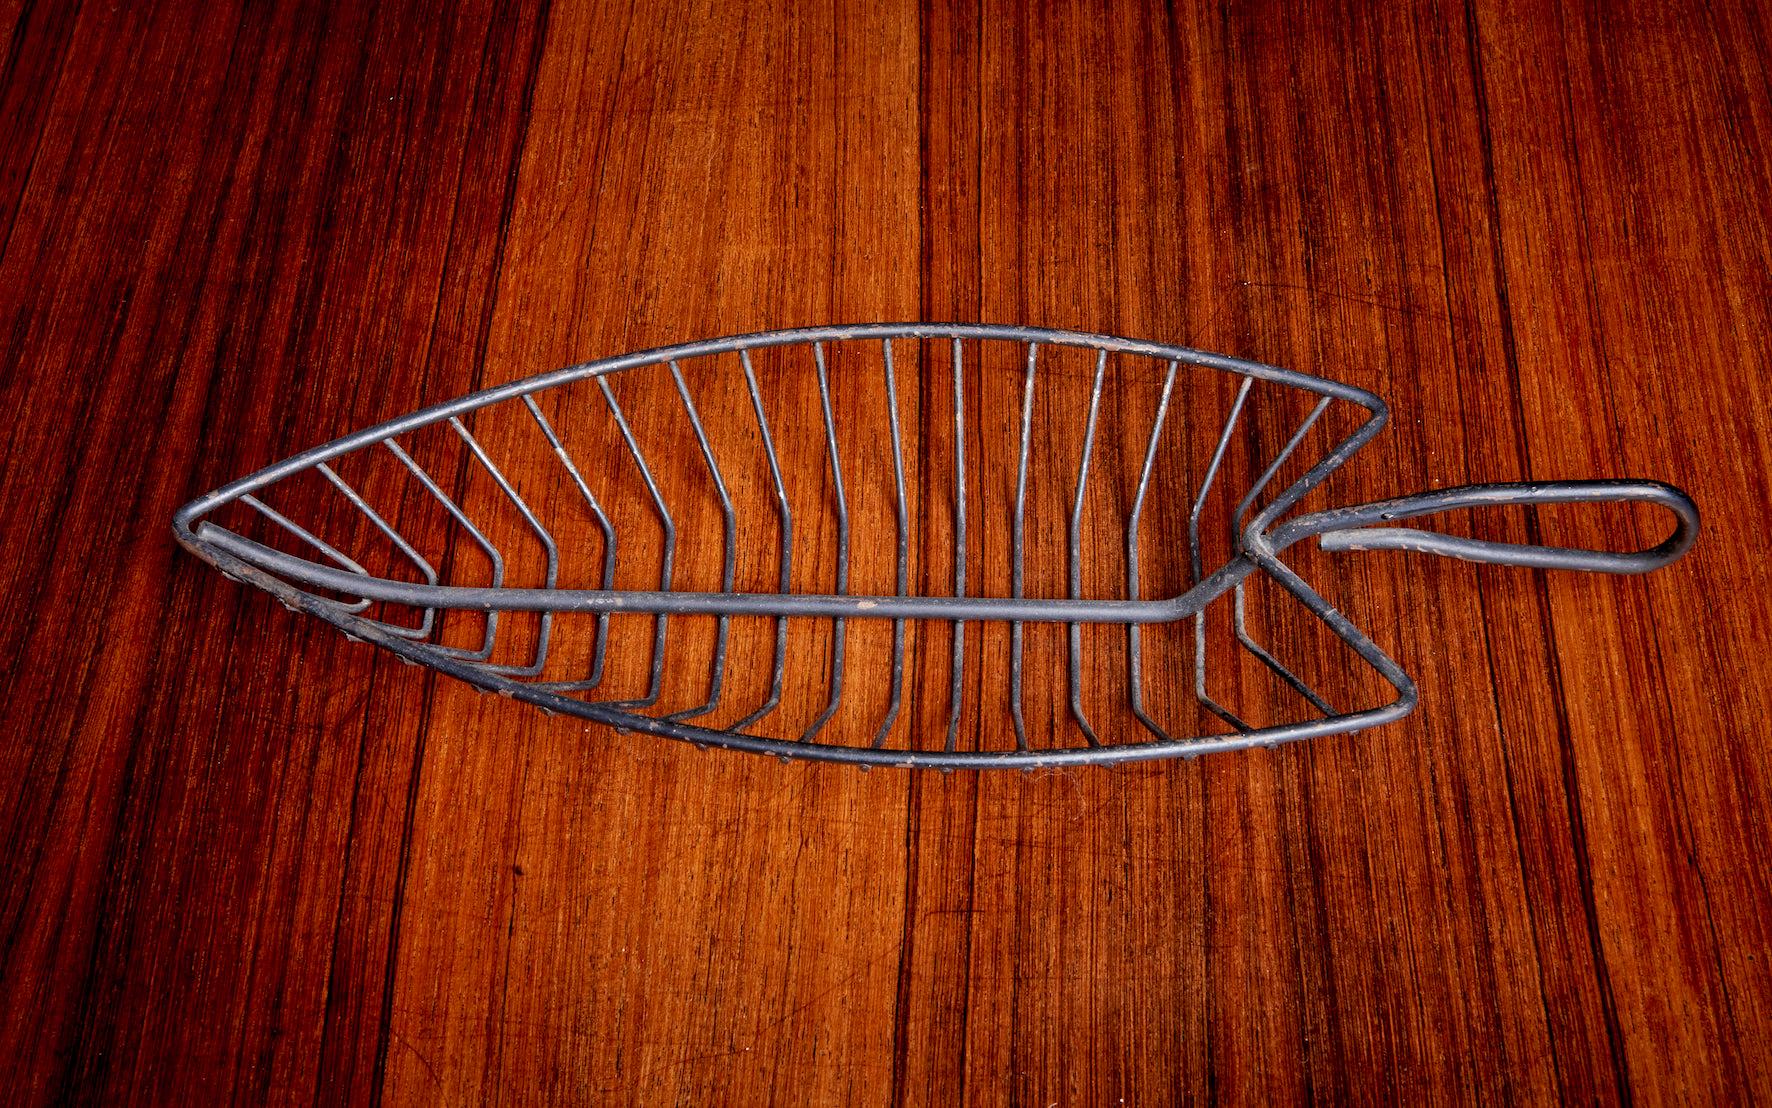 Paire de bols décoratifs en fil de fer en forme de poisson.
Les mesures pour le plus petit sont : 16.5cm / 6.5